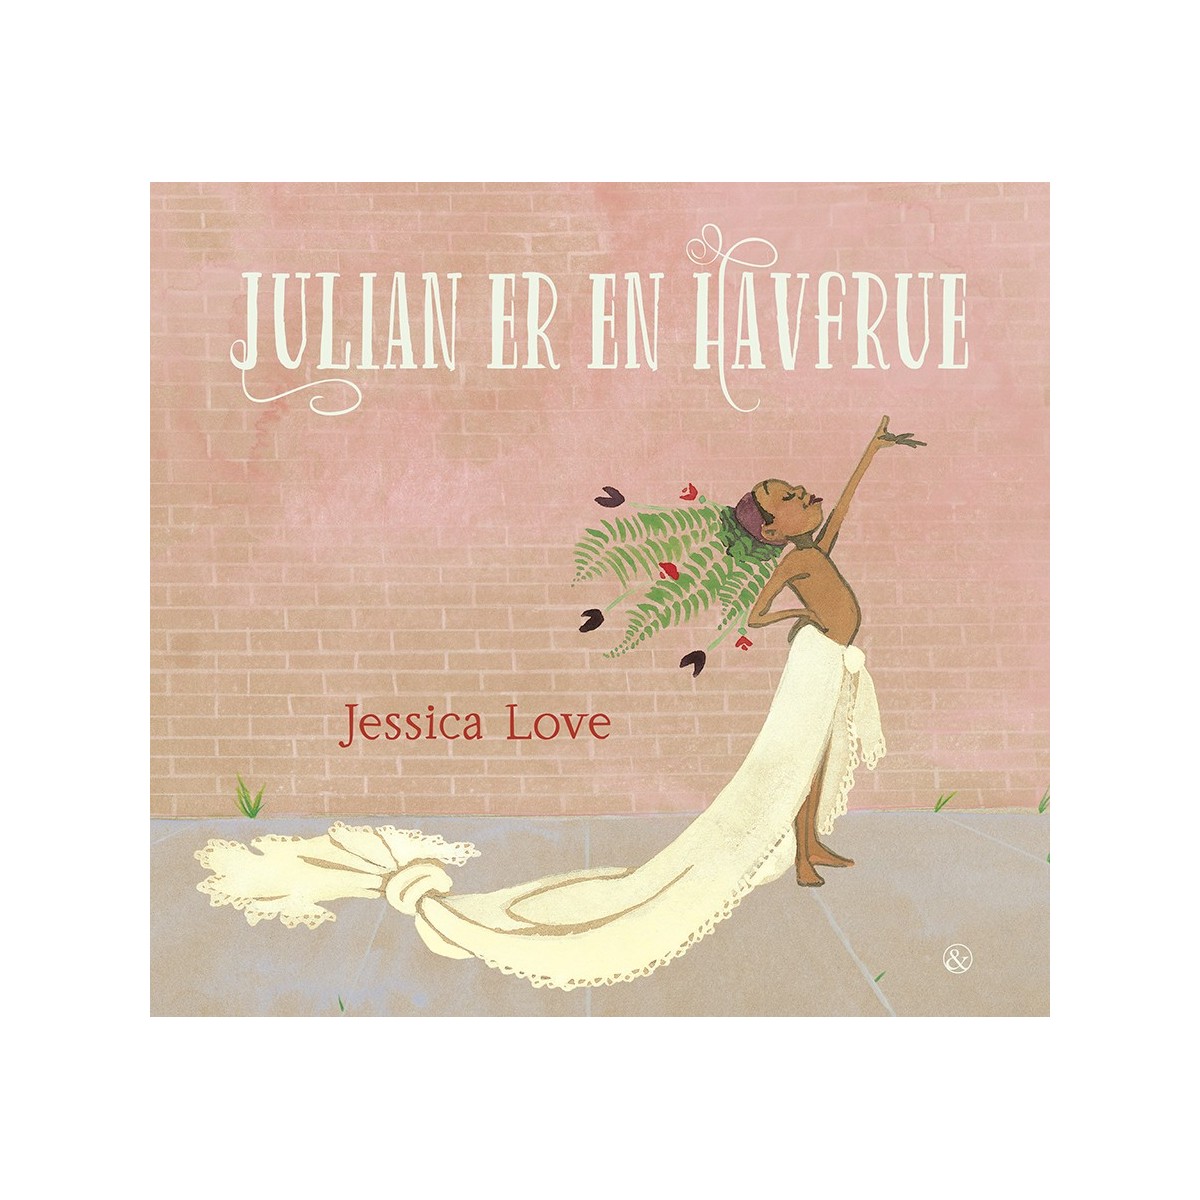 Jessica Love: Julian er en havfrue